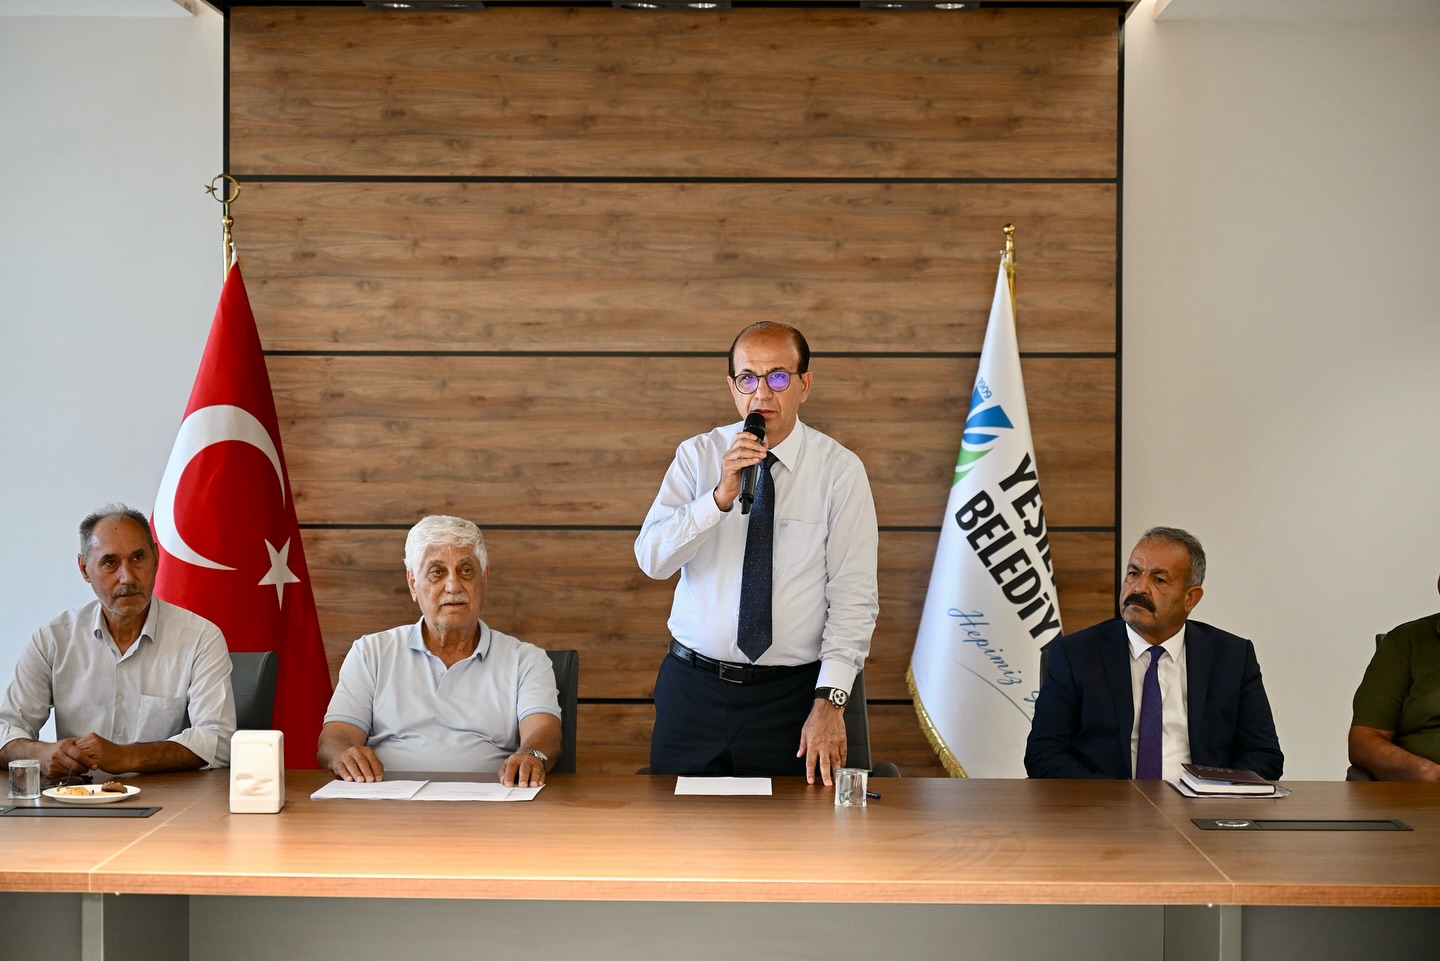 Malatya Yeşilyurt Belediyespor Kulüp Başkanlığına Adnan Çoban Seçildi